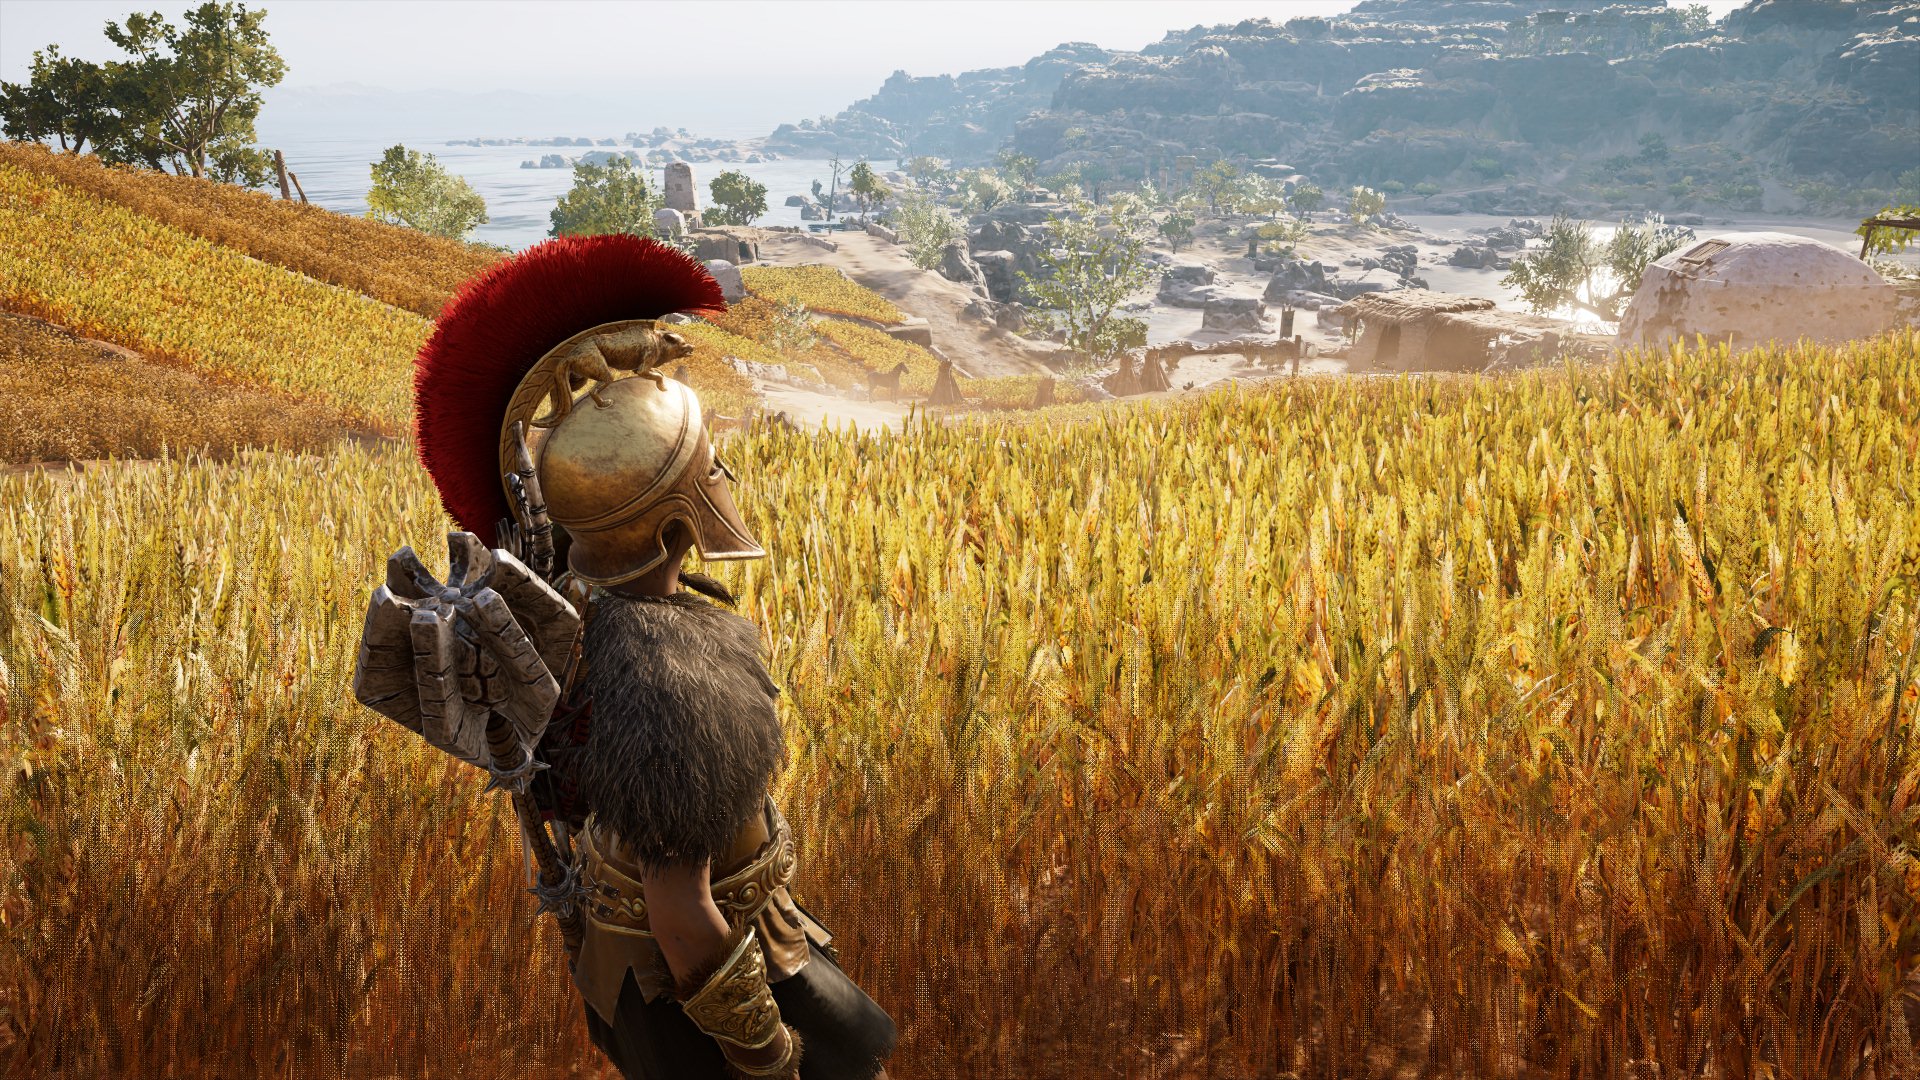 Скачать обои бесплатно Видеоигры, Кредо Ассасина, Assassin's Creed: Одиссея картинка на рабочий стол ПК